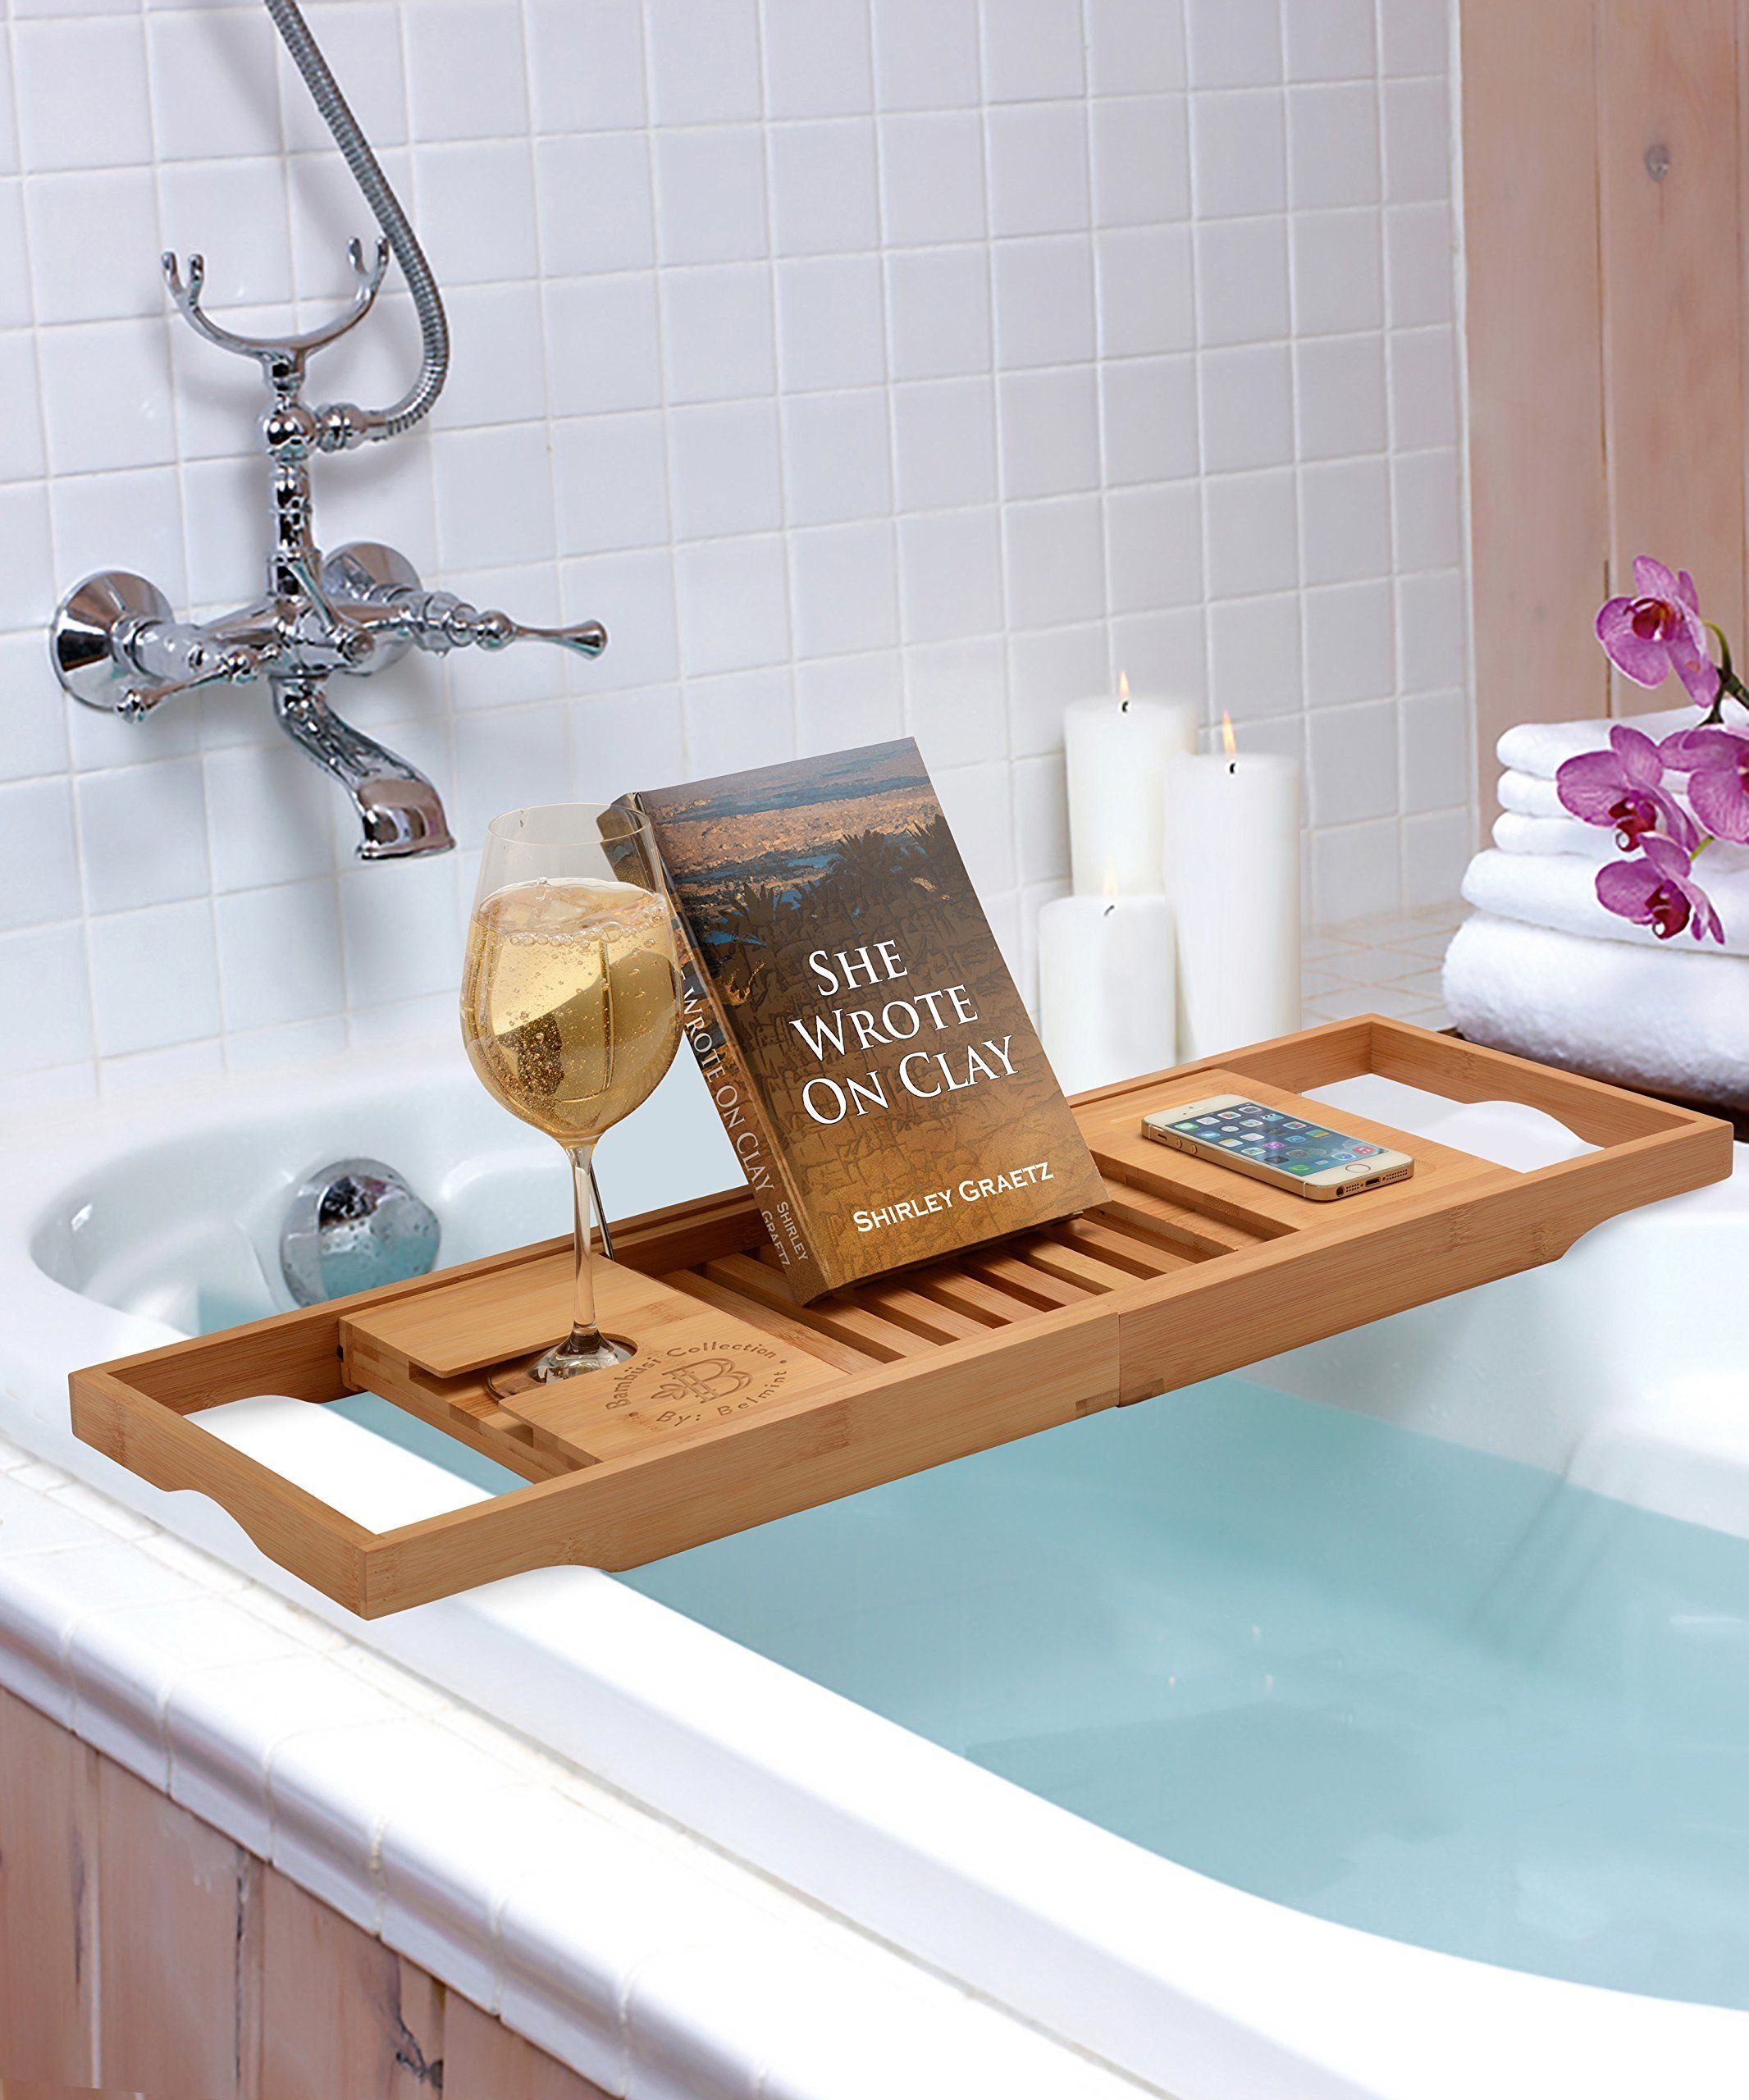 Подставки в ванную купить. Havern Хаверн полка для ванны, бамбук70 см. Подставка в ванную. Подставка на ванну деревянная. Столик для ванной.